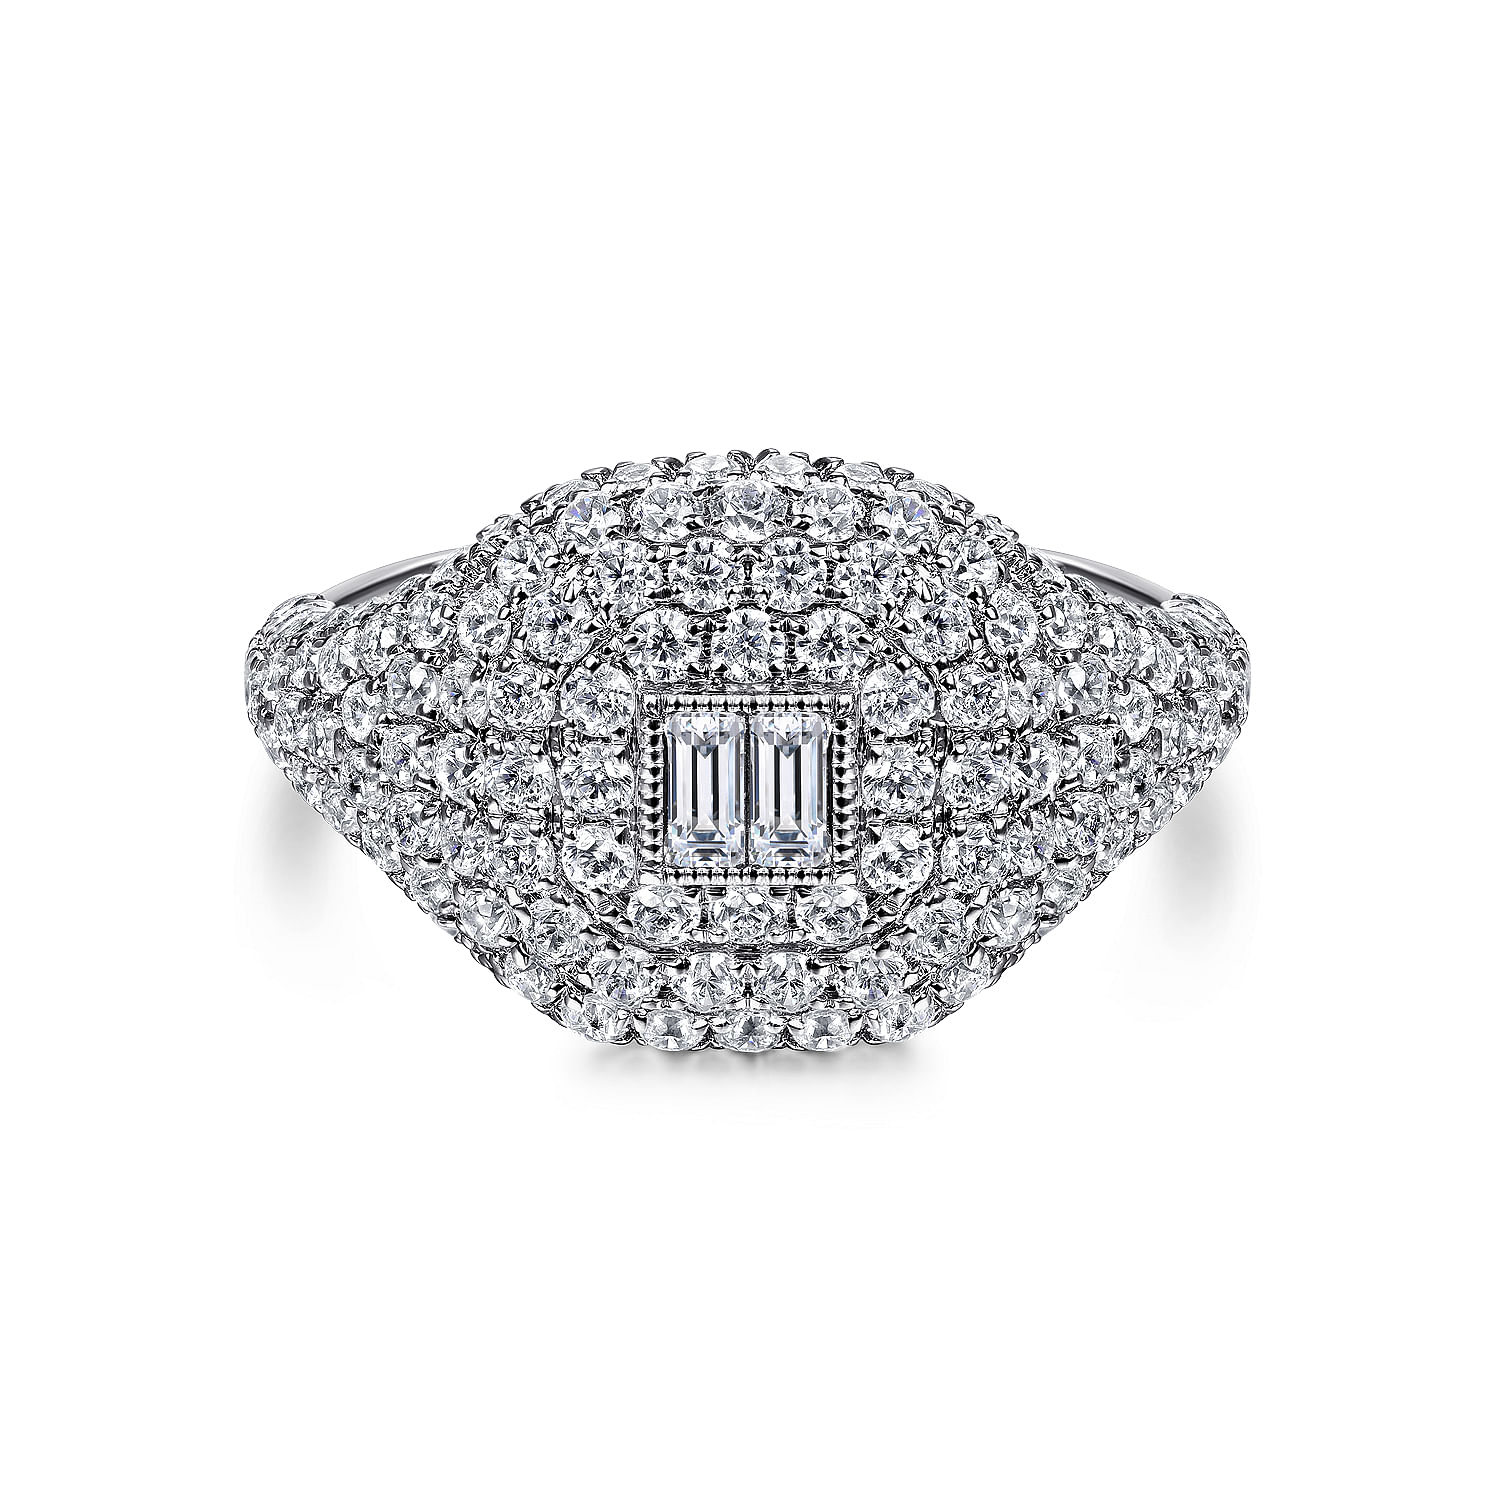 14K White Gold Diamond Pavé Ring with Baguette Center 